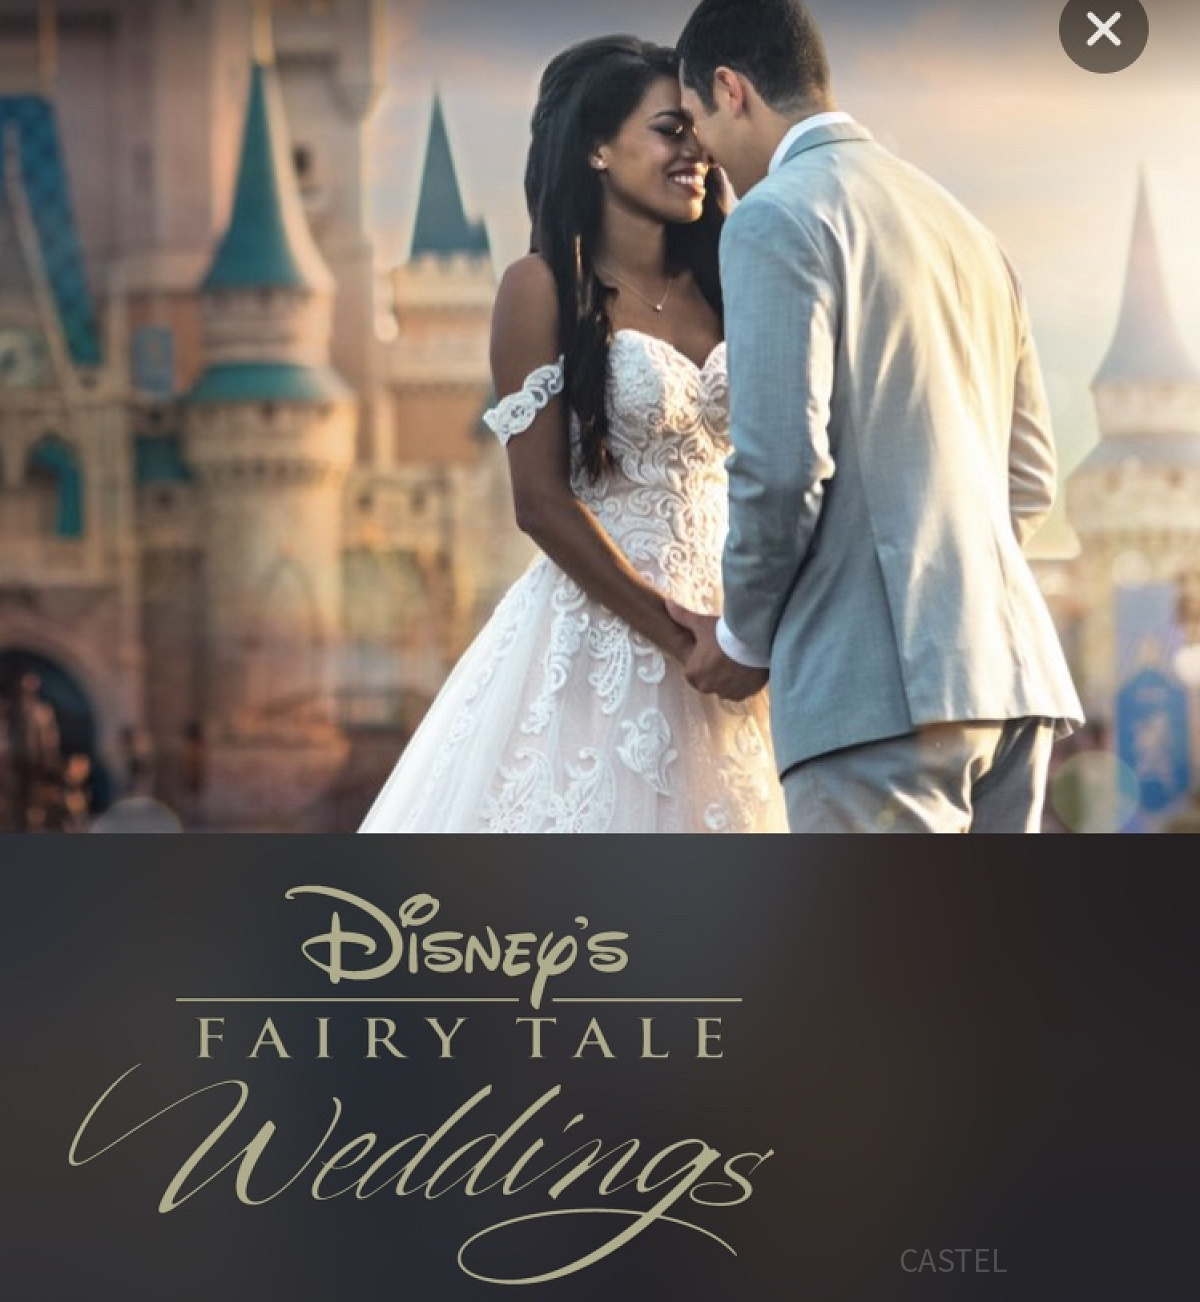 Disney FAIRY TALE Weddings（ディズニー・フェアリーテイル・ウェディング）